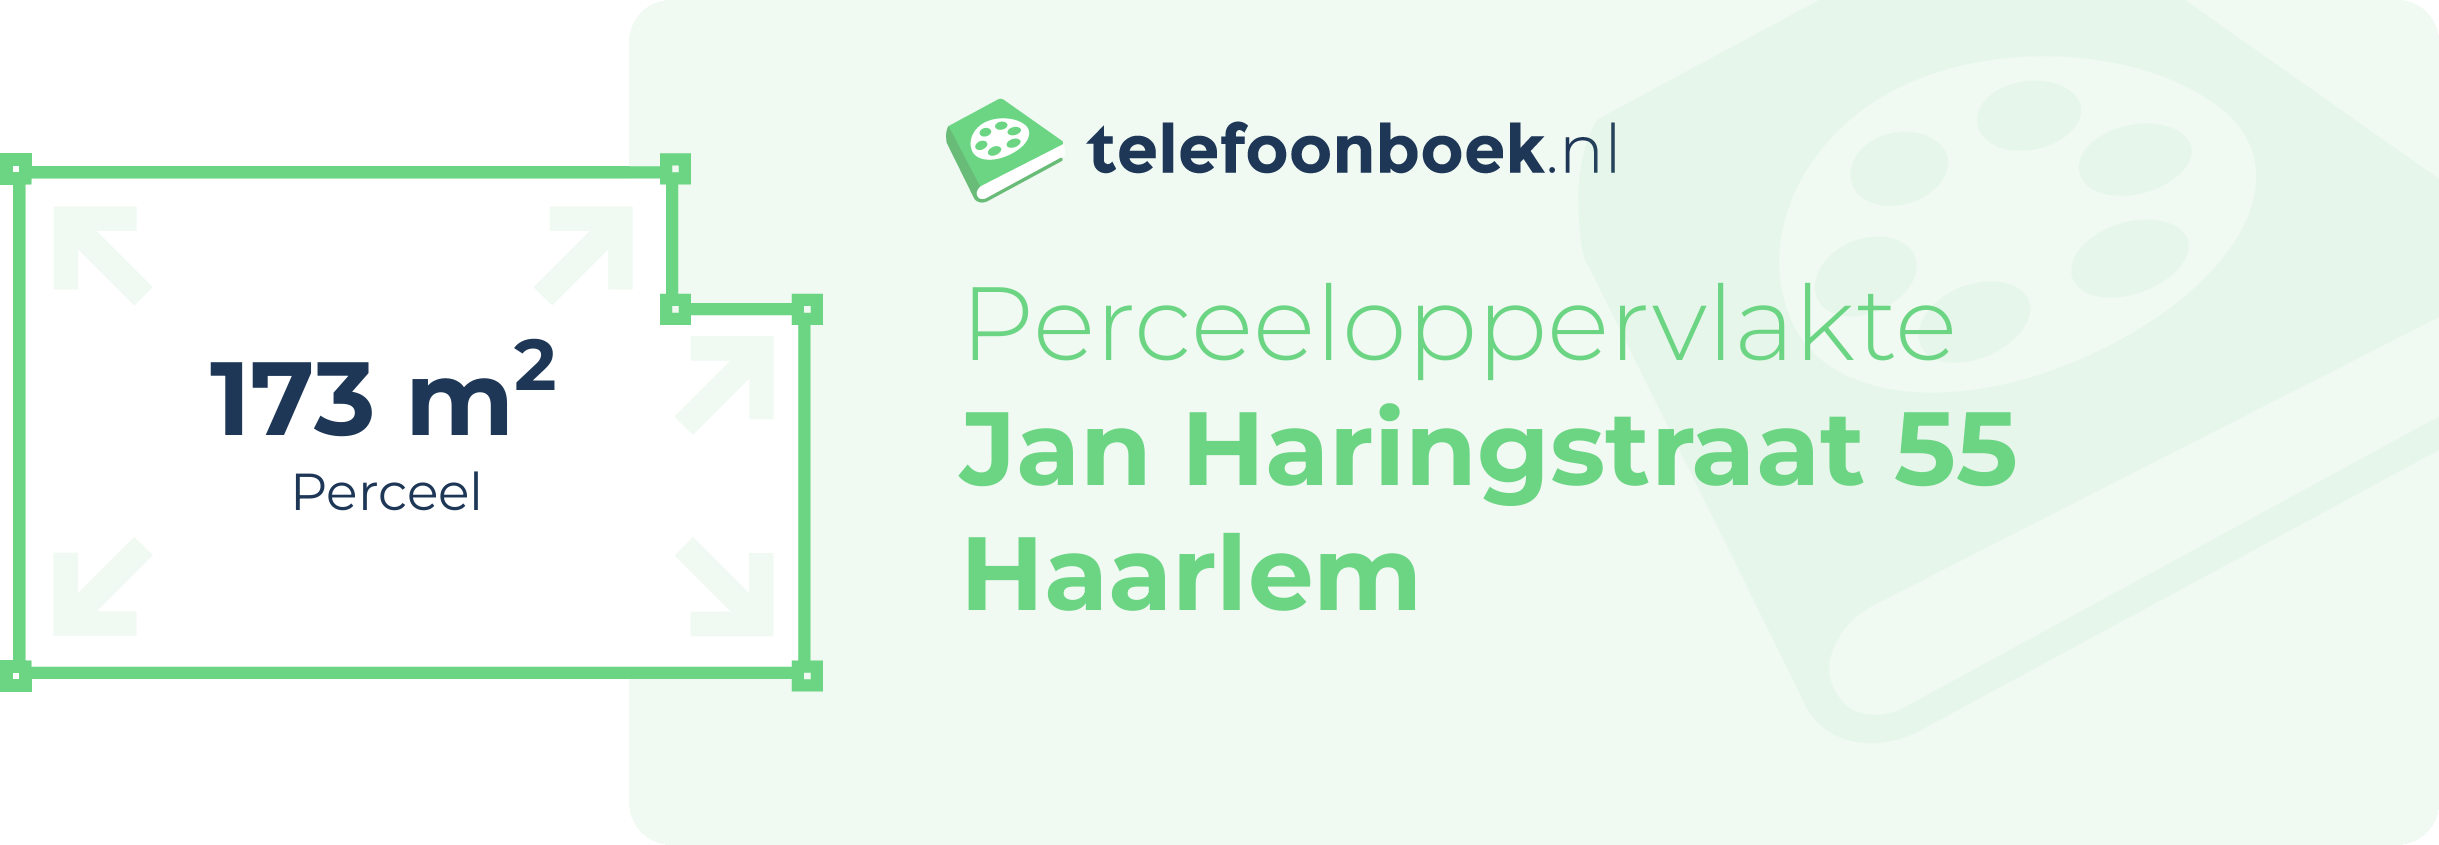 Perceeloppervlakte Jan Haringstraat 55 Haarlem